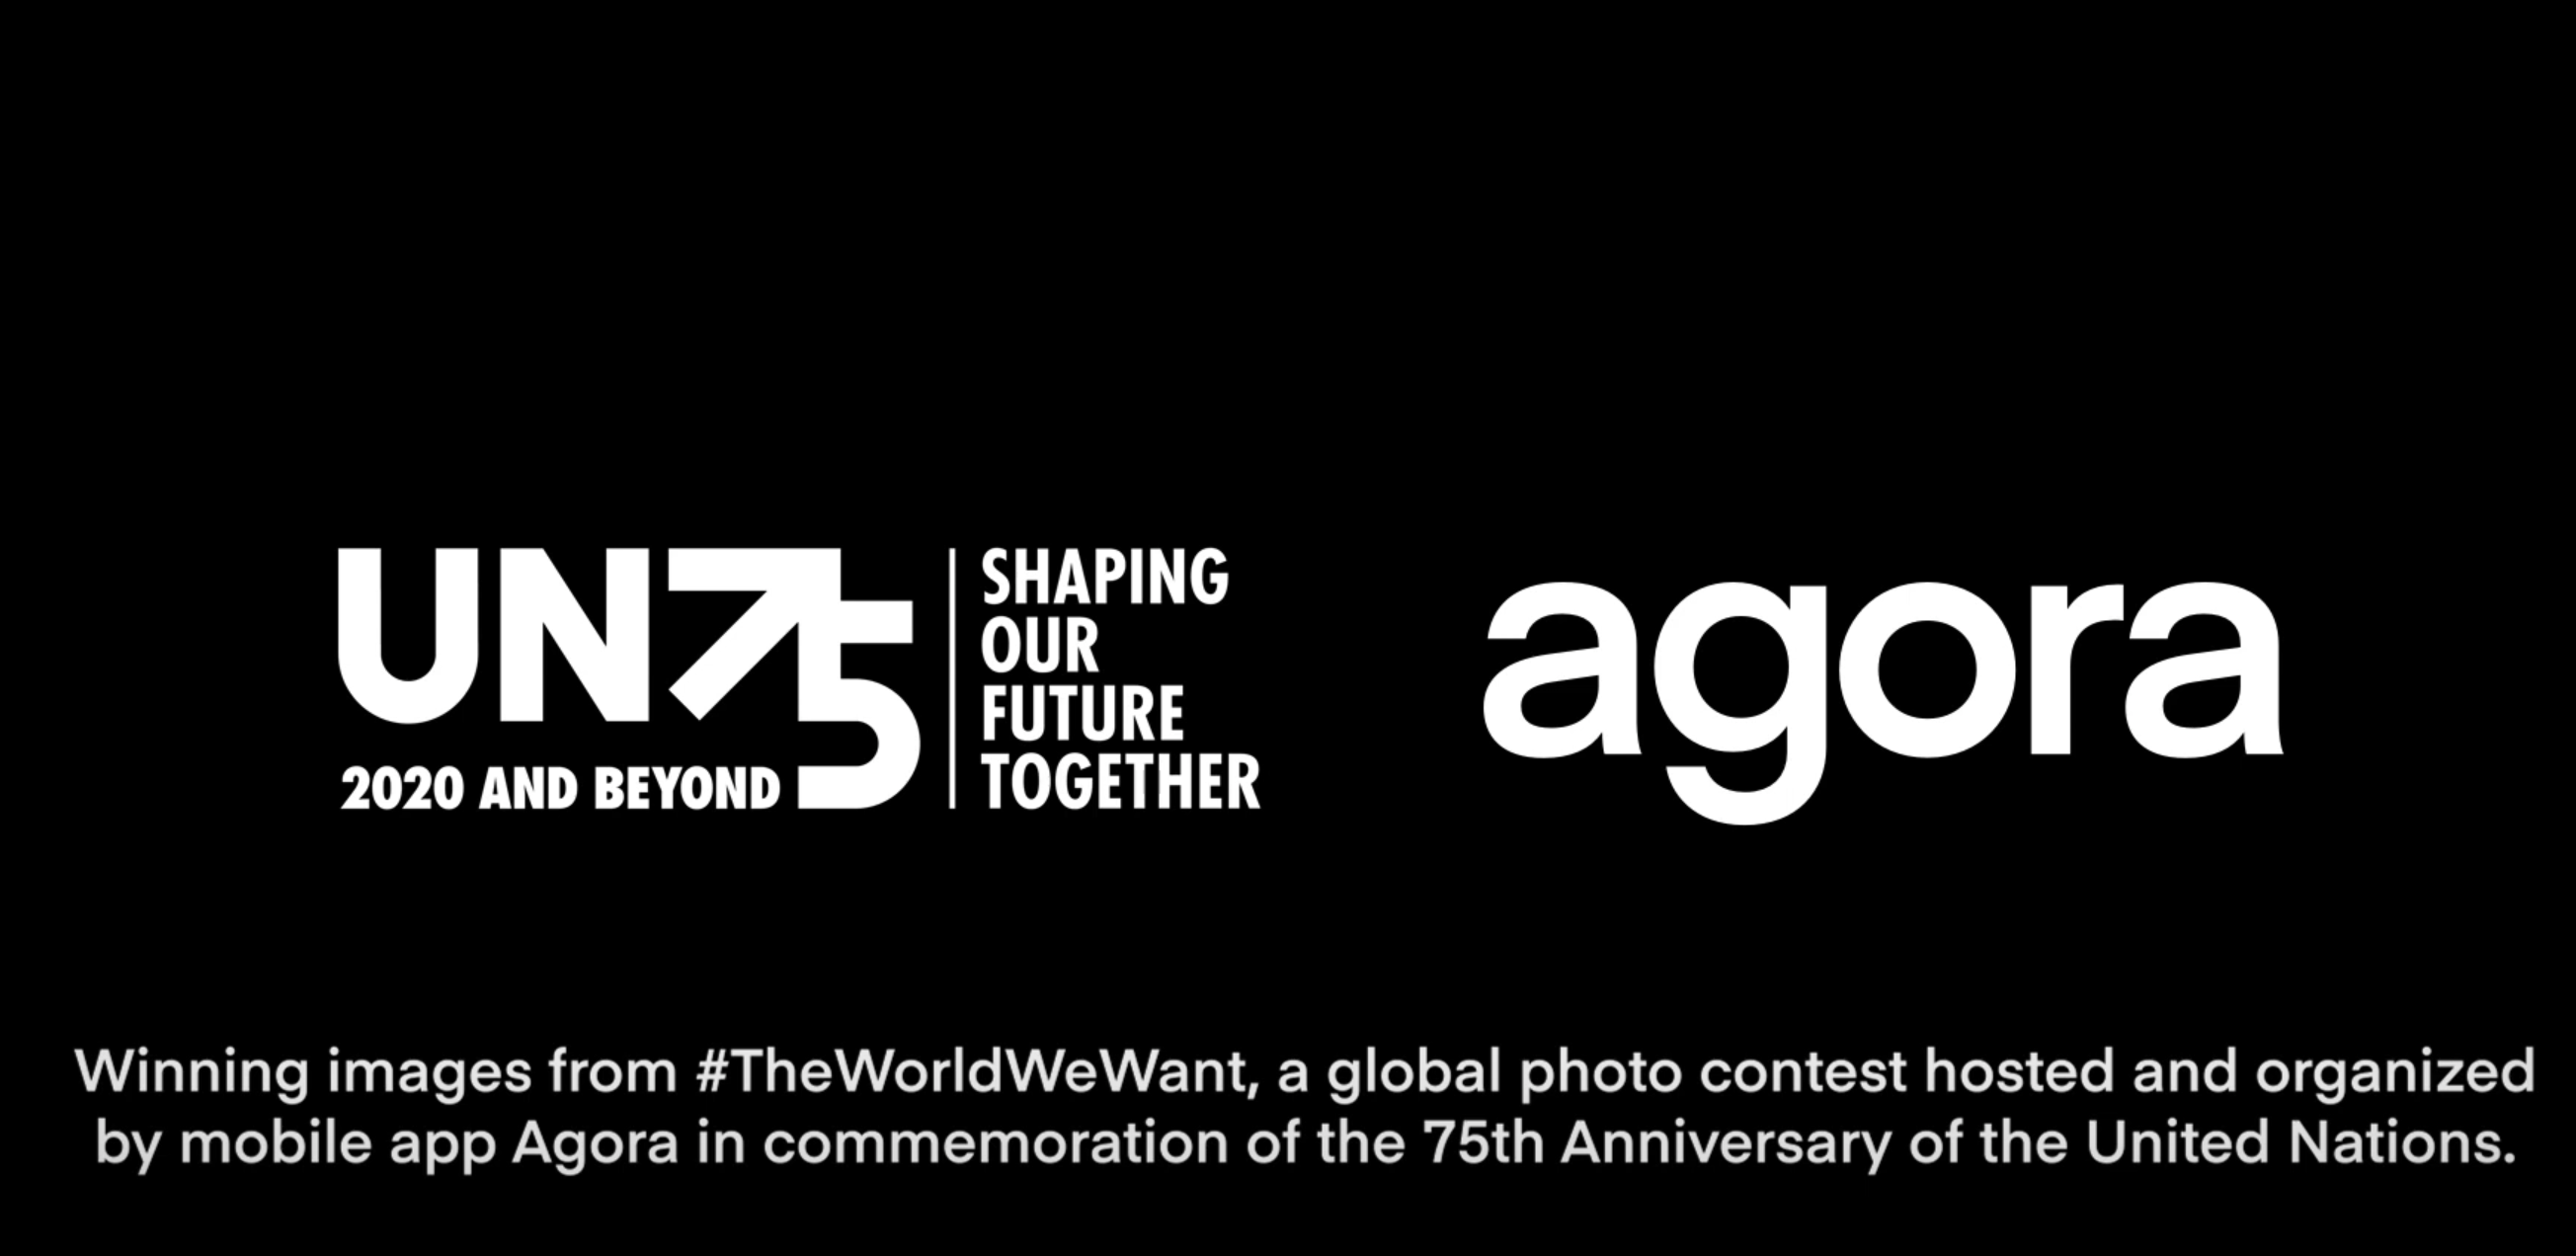 Agora Images: #TheWorldWeWant